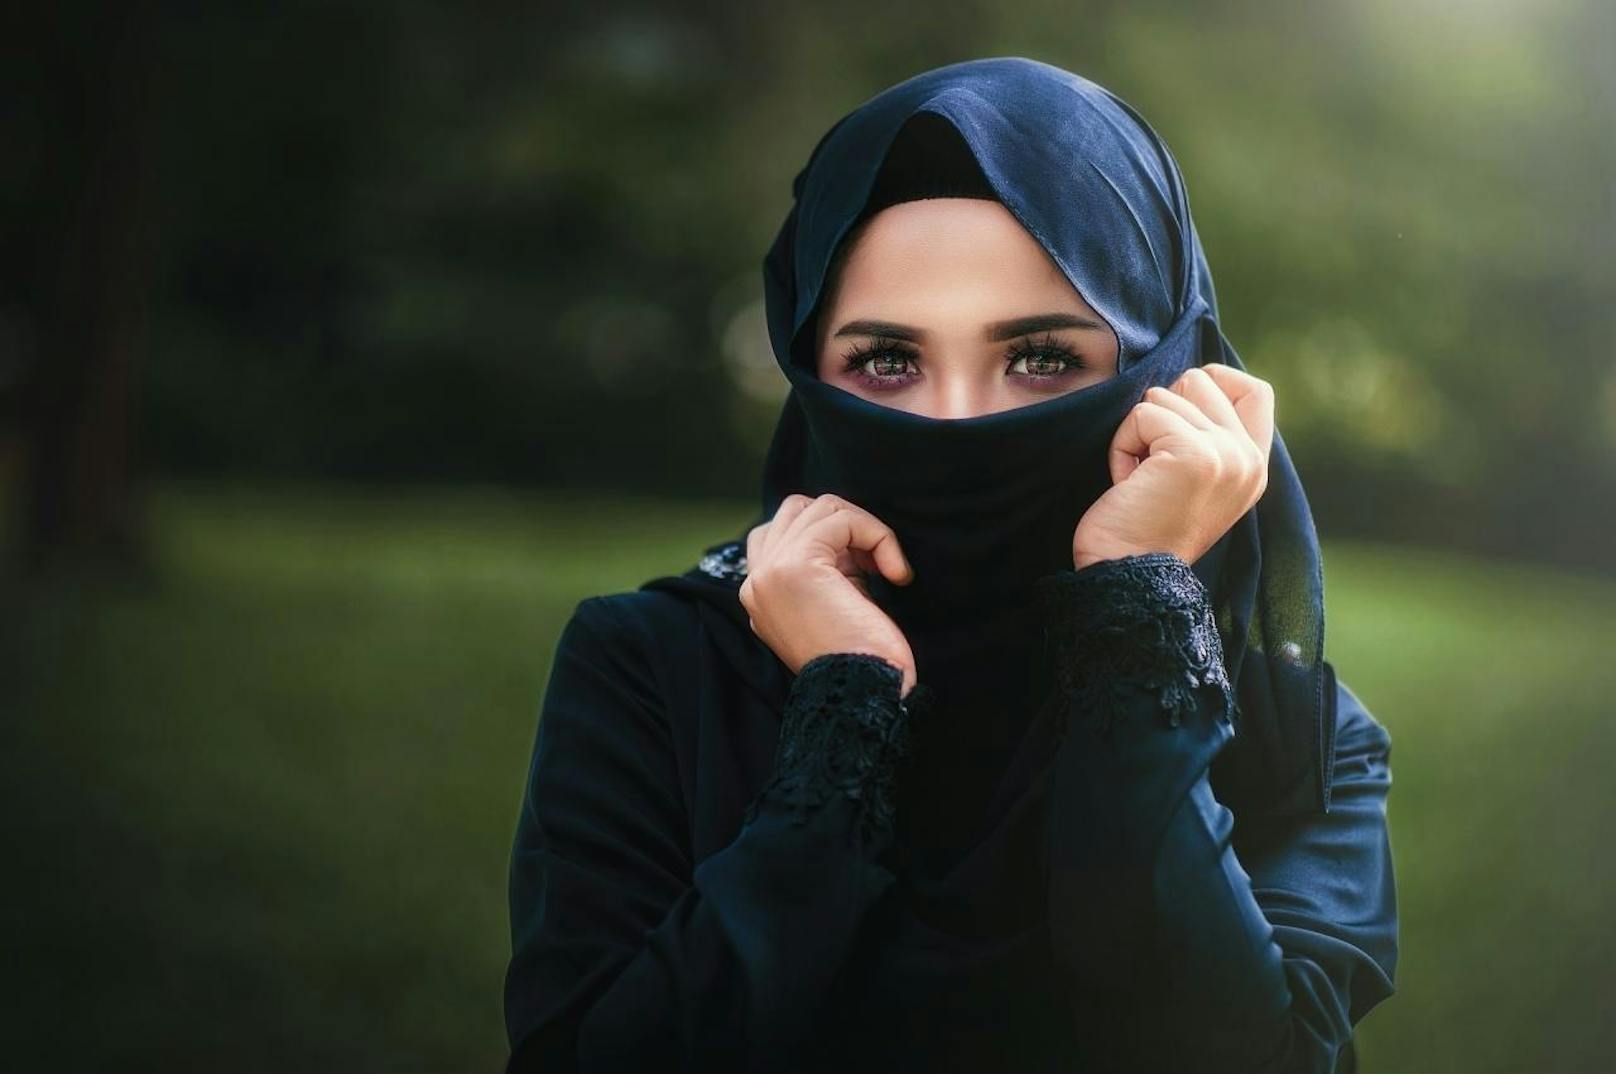 Laut dem österreichische Islamwissenschaftler Mouhanad Khorchide ist ein stärkerer innerislamischer Diskurs über das Thema Kopftuch notwendig. (Archivbild)